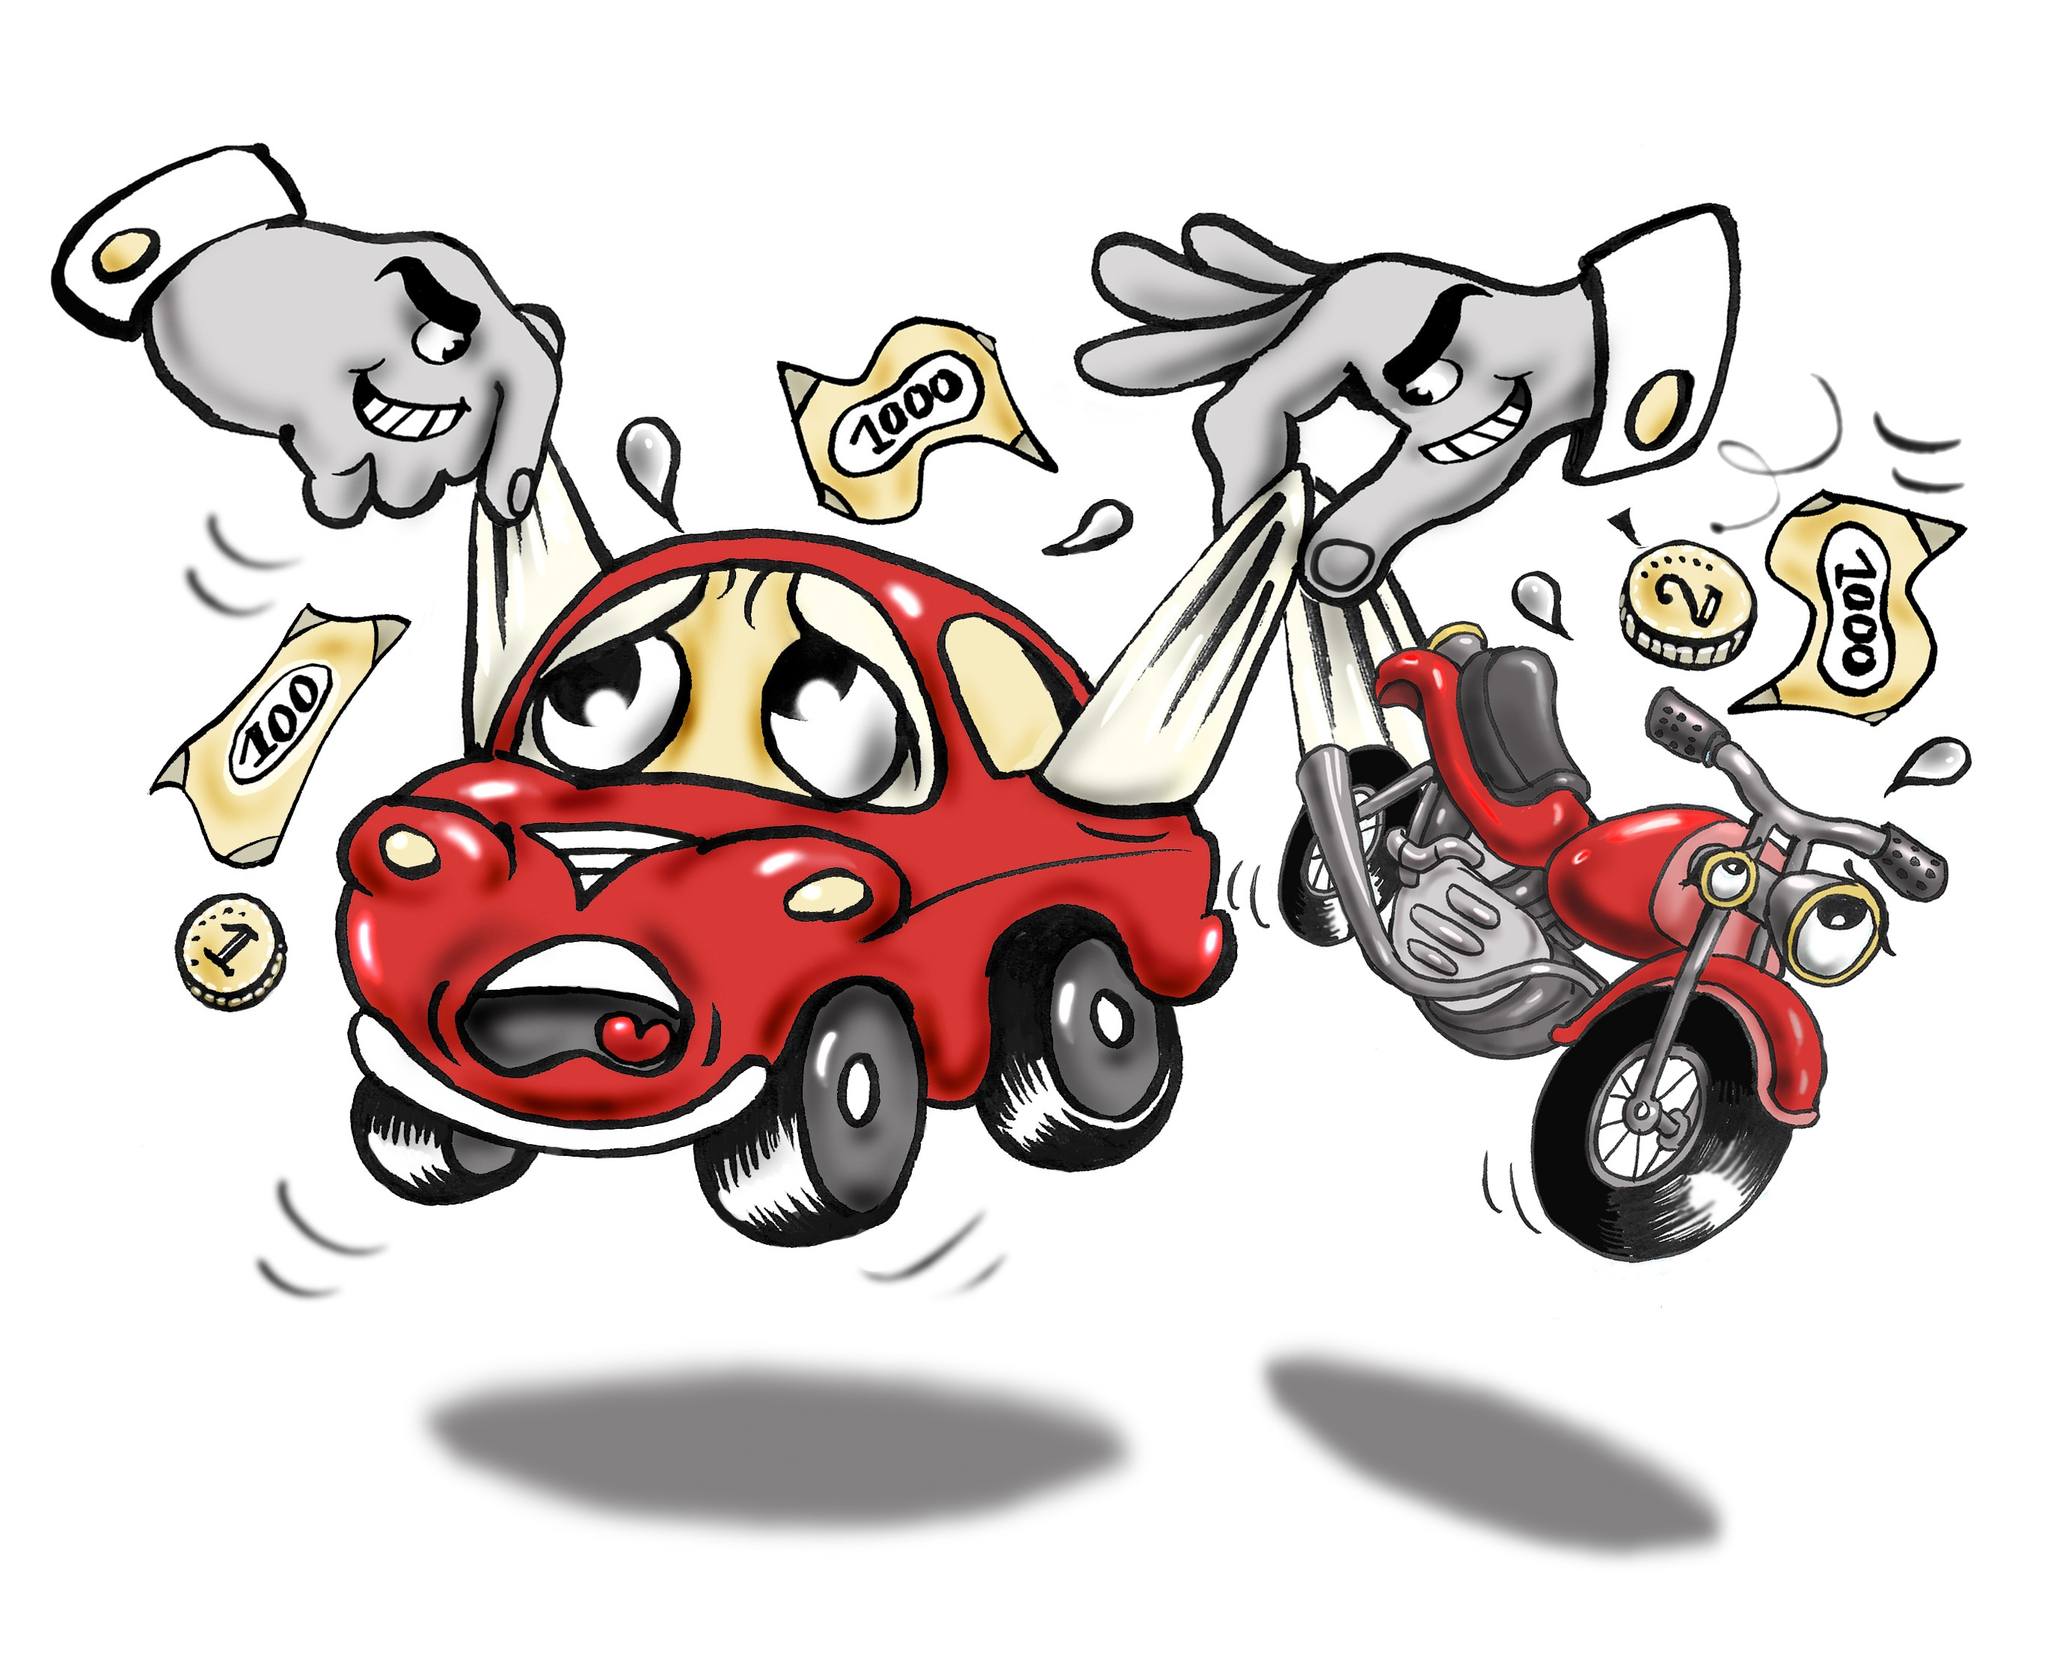 Ganz in unserem Sinne  – NEIN zur KMU-feindlichen Erhöhung der Motorfahrzeugsteuer